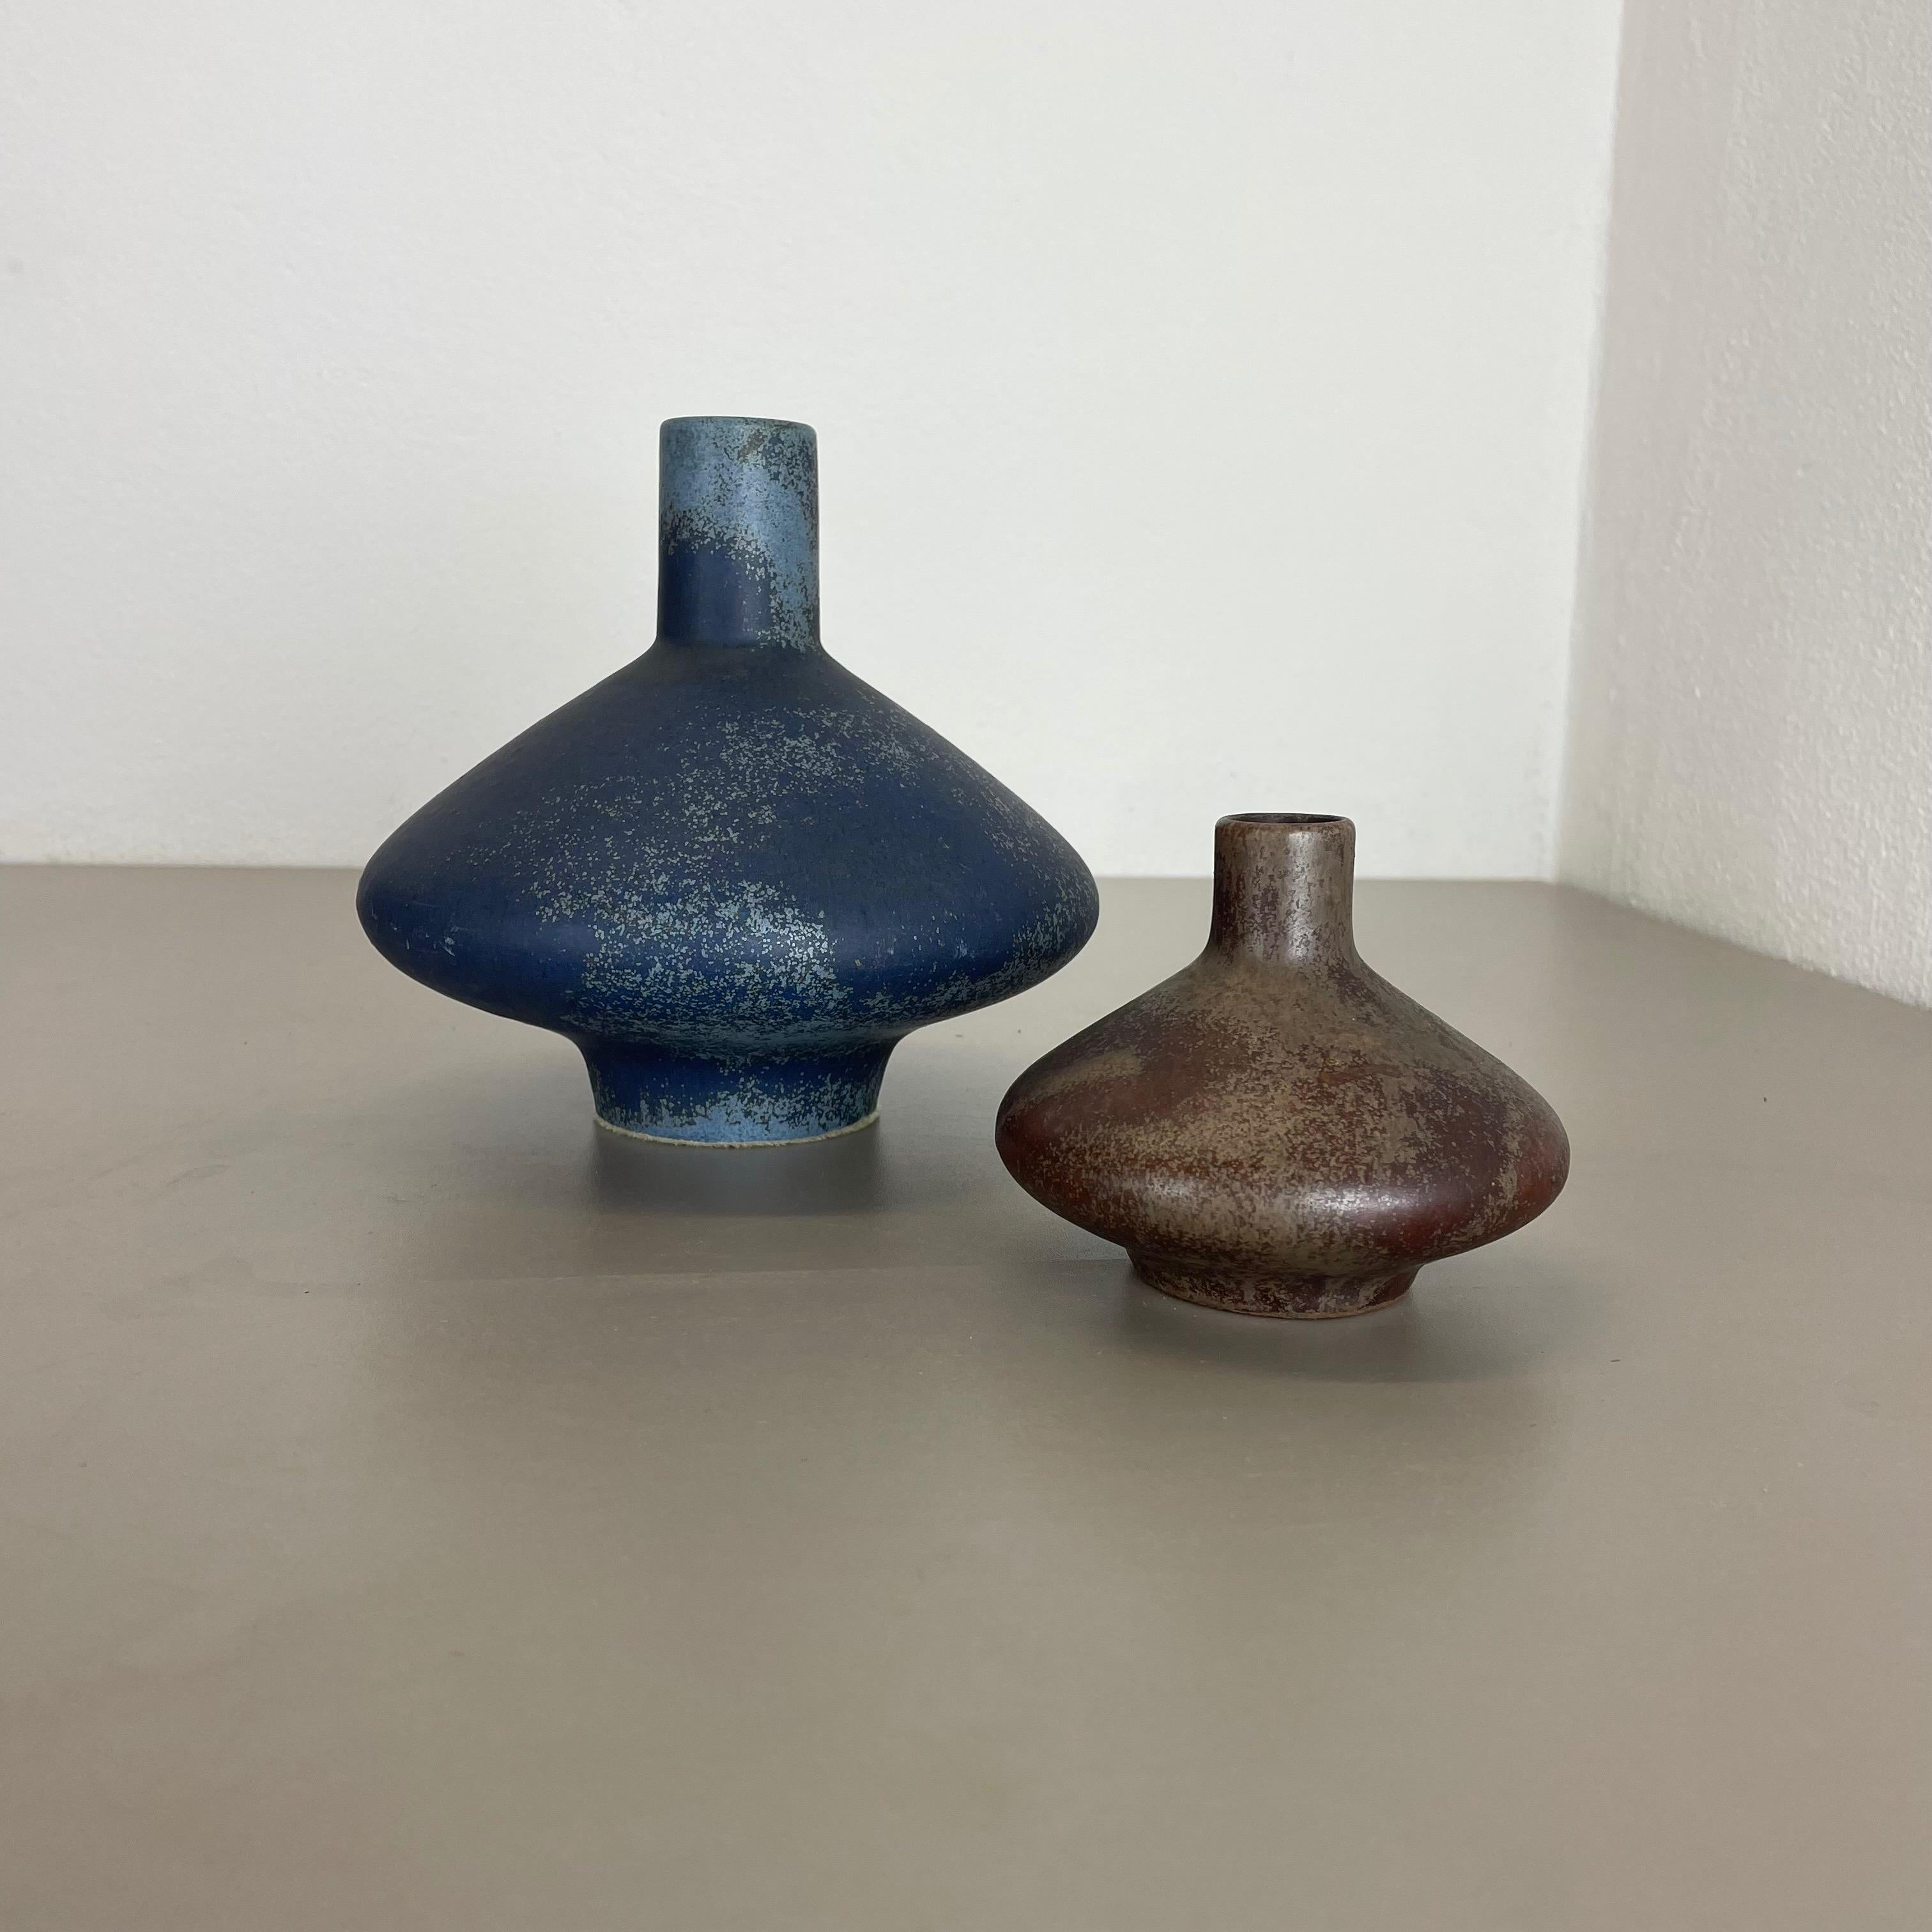 Artikel:

Keramikobjekte 2er-Set


Designer und Produzent:

Otto Keramik, Deutschland



Jahrzehnt:

1970s


Diese originalen Vintage Studio Pottery Objekte wurden von Otto Keramik in den 1970er Jahren in Deutschland entworfen und hergestellt. Sie